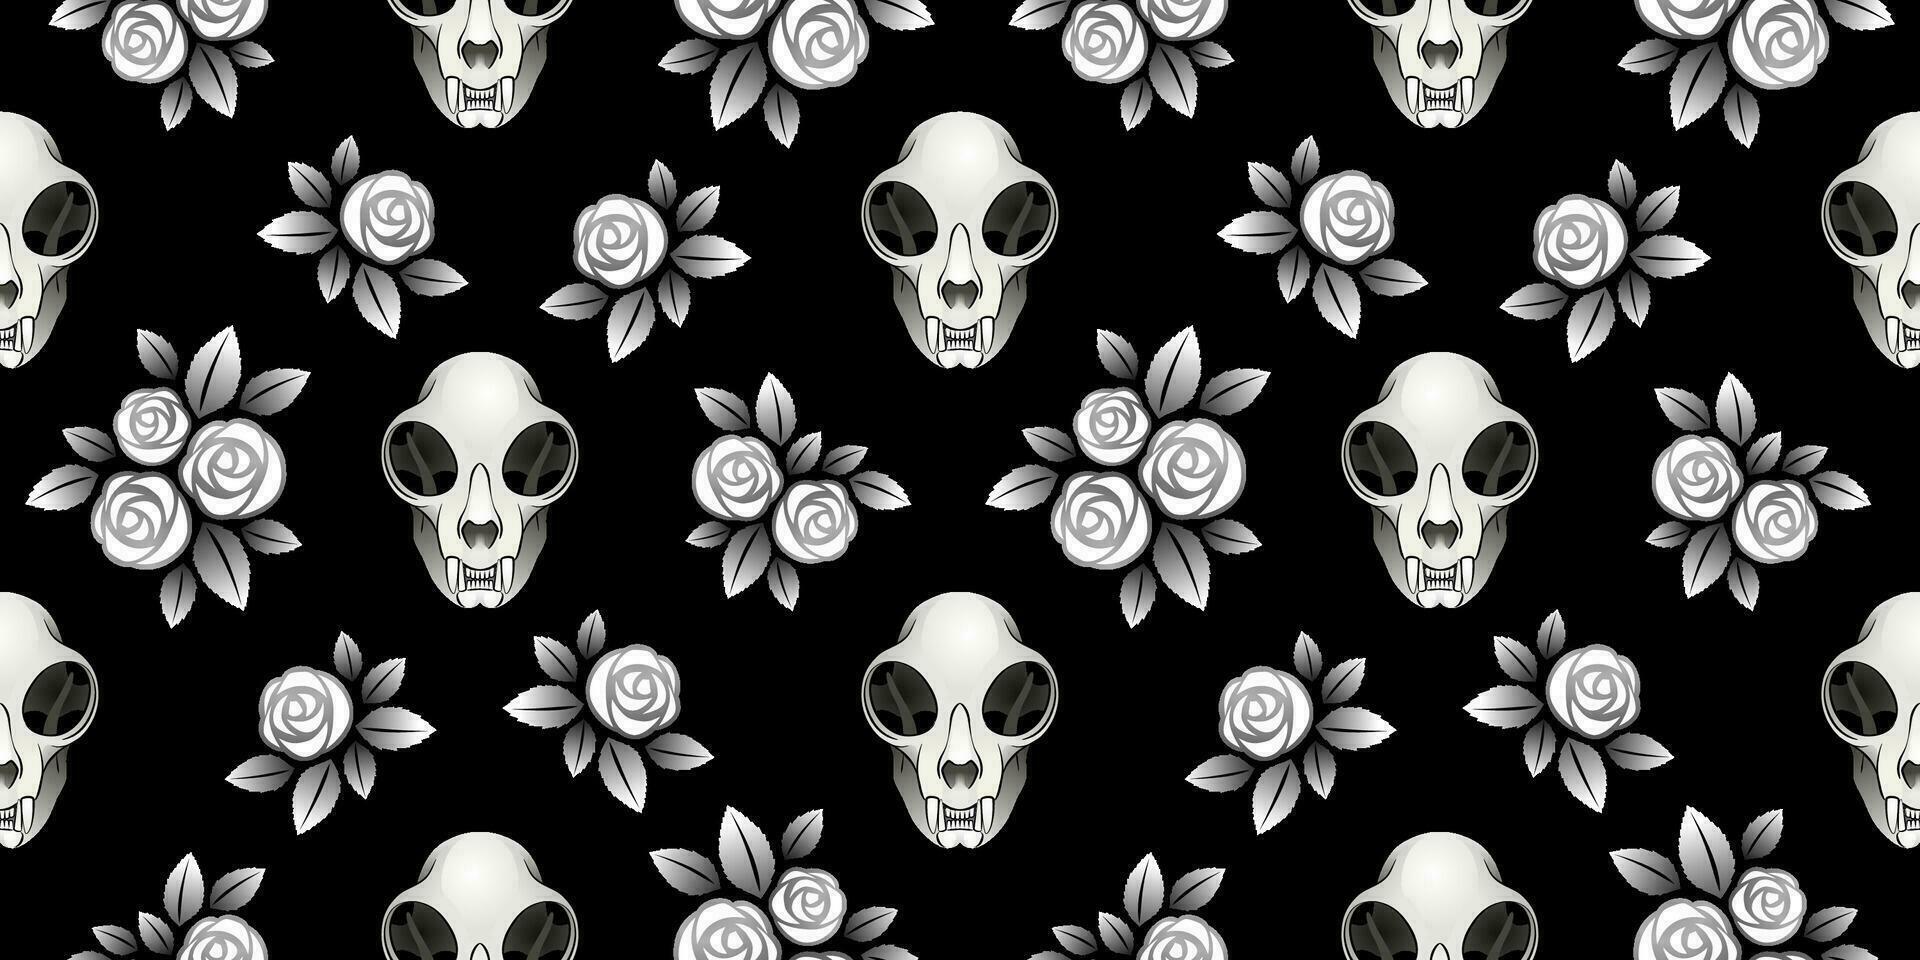 mehrere Katze Leben. Vektor nahtlos Muster gebildet von Katze Schädel und Rose Blumen auf ein schwarz Hintergrund.